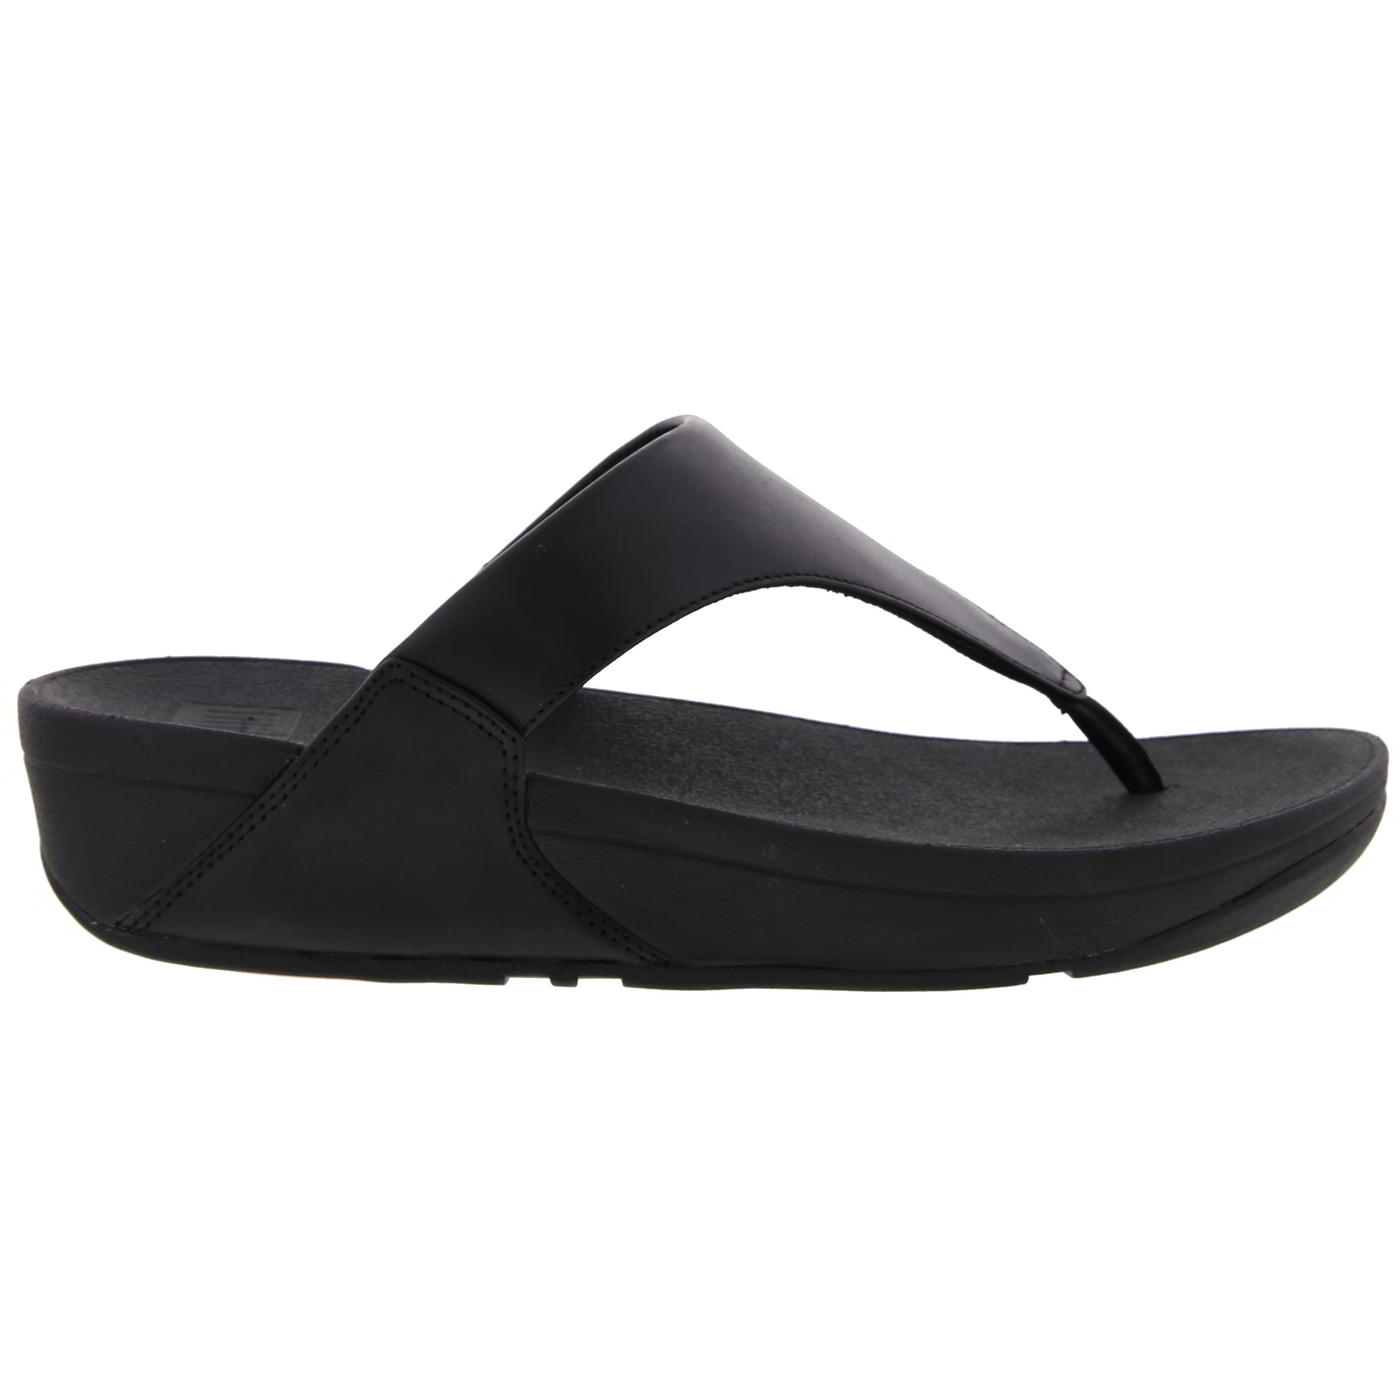 FitFlop Women's Lulu Toe Post Leather Flip Flop Sandals - UK 5